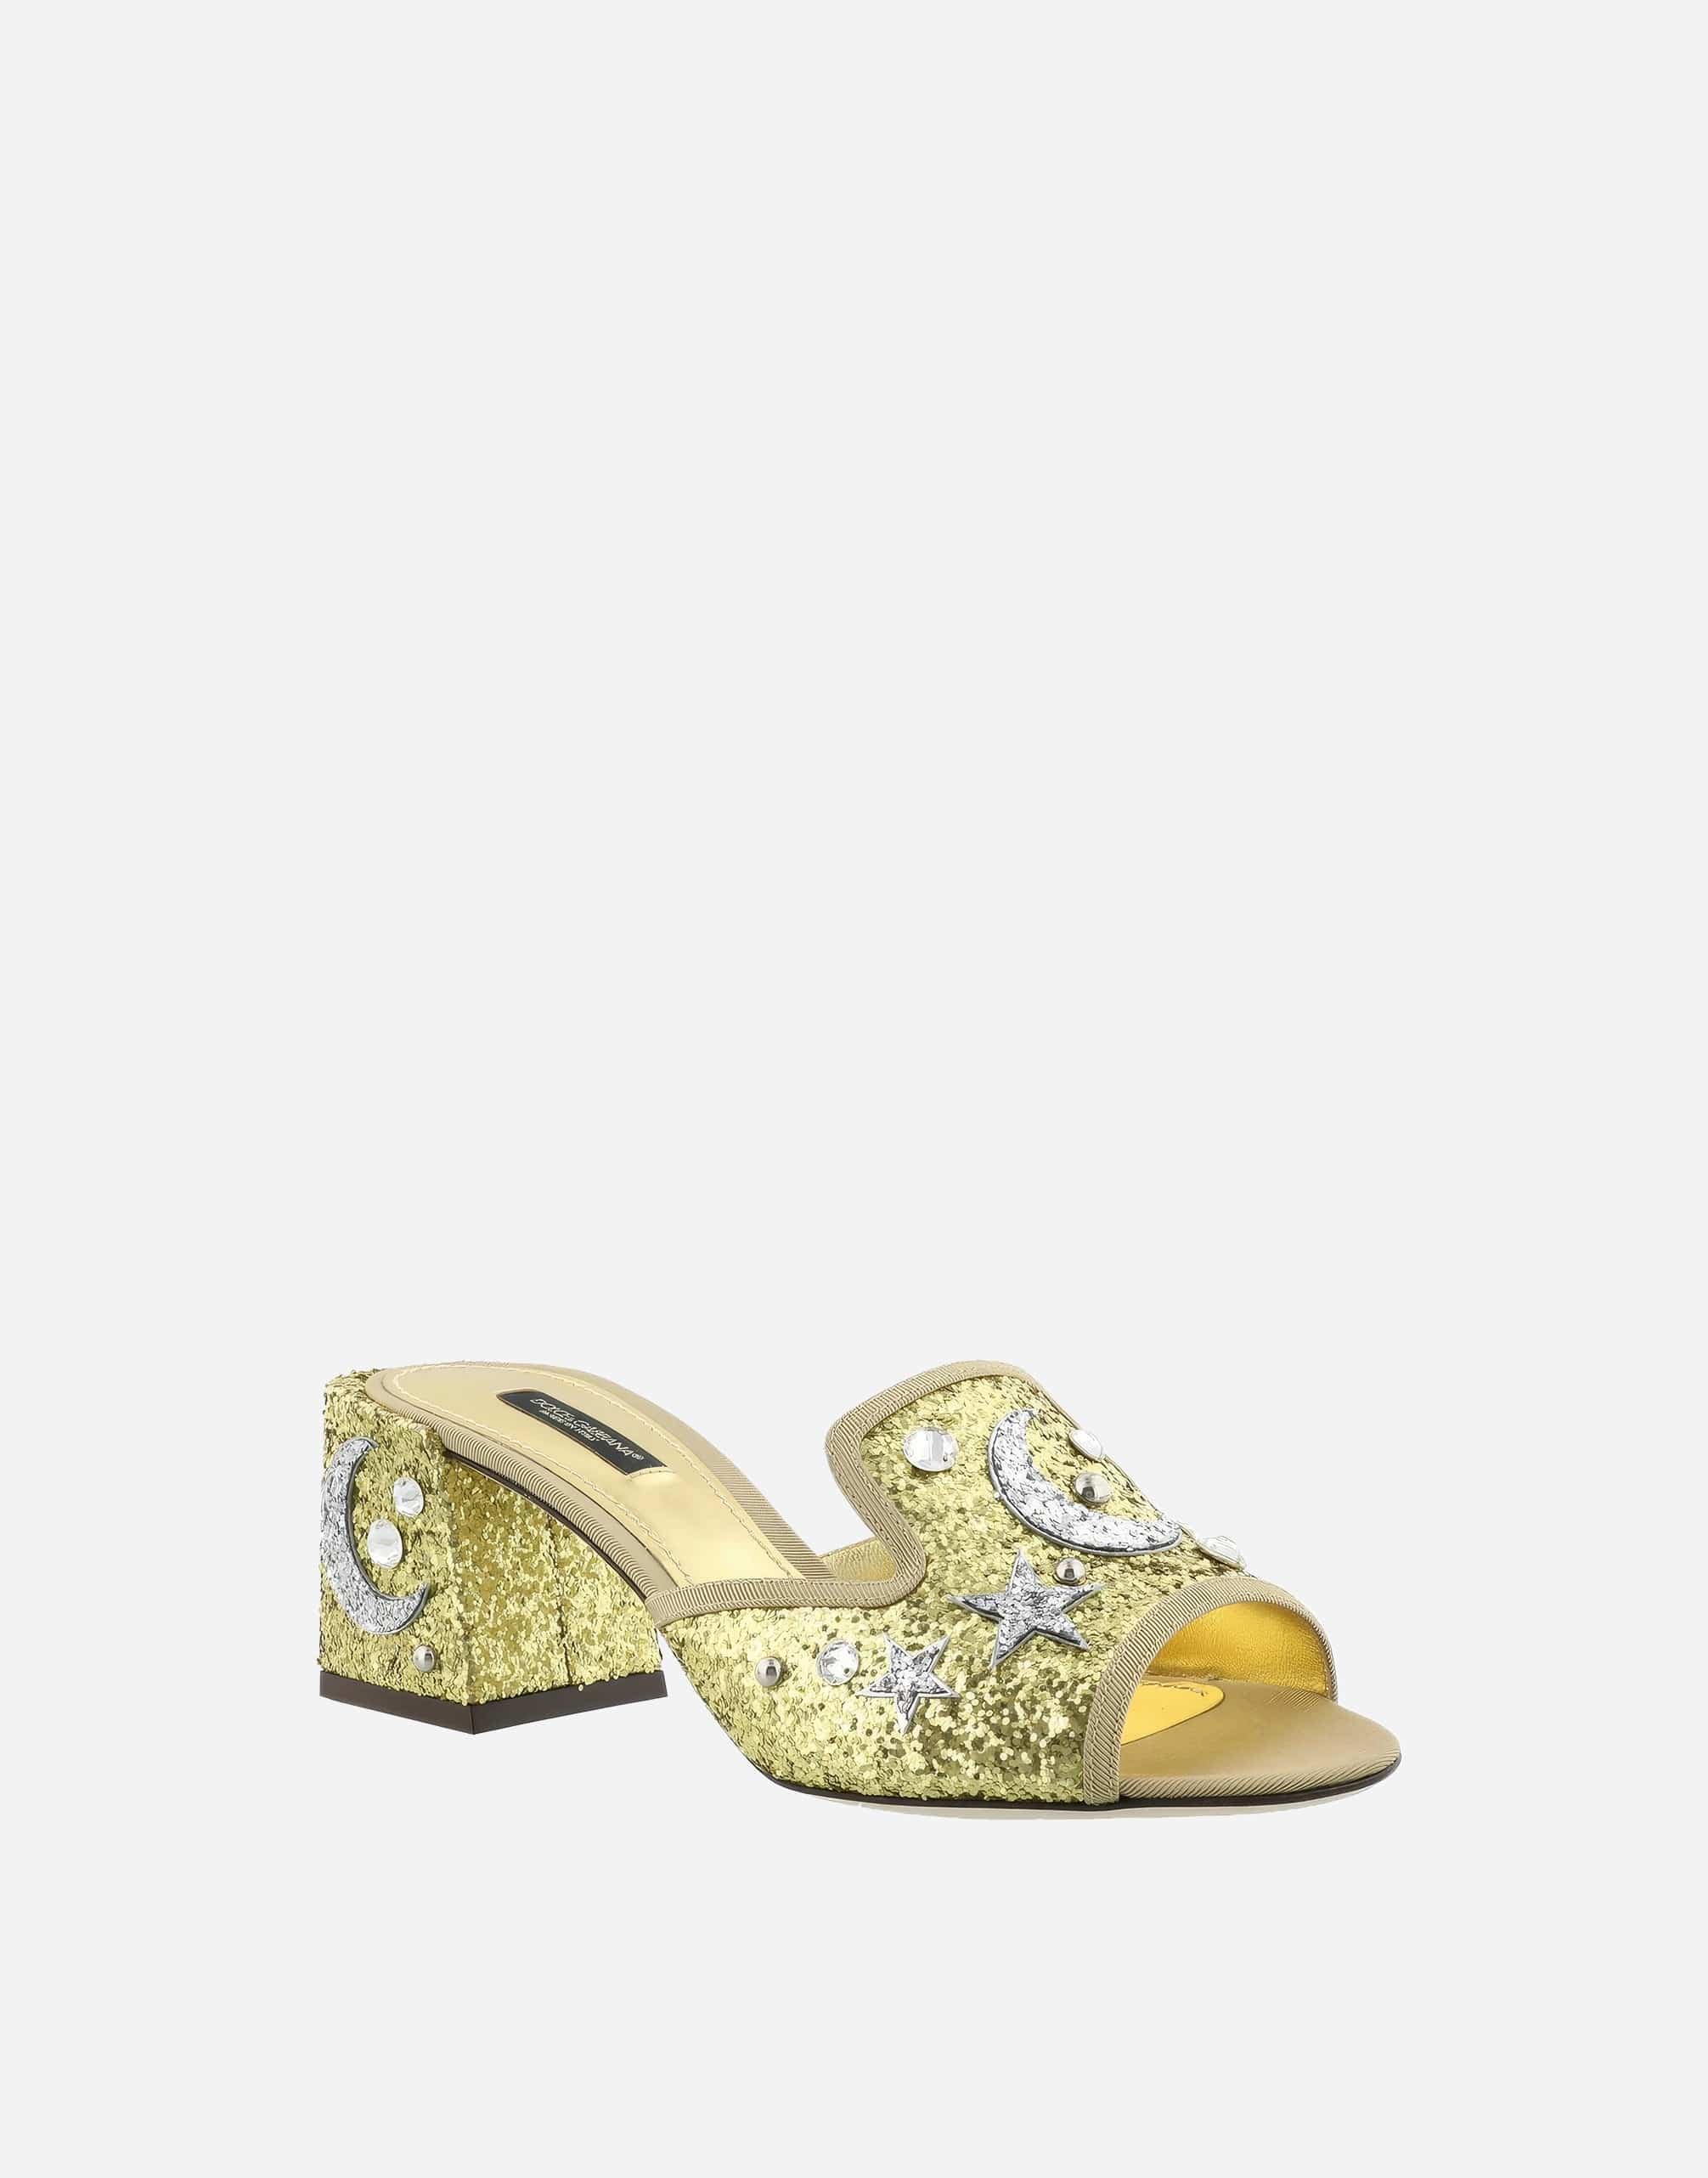 Gioiello sandali a punta di piedi oro